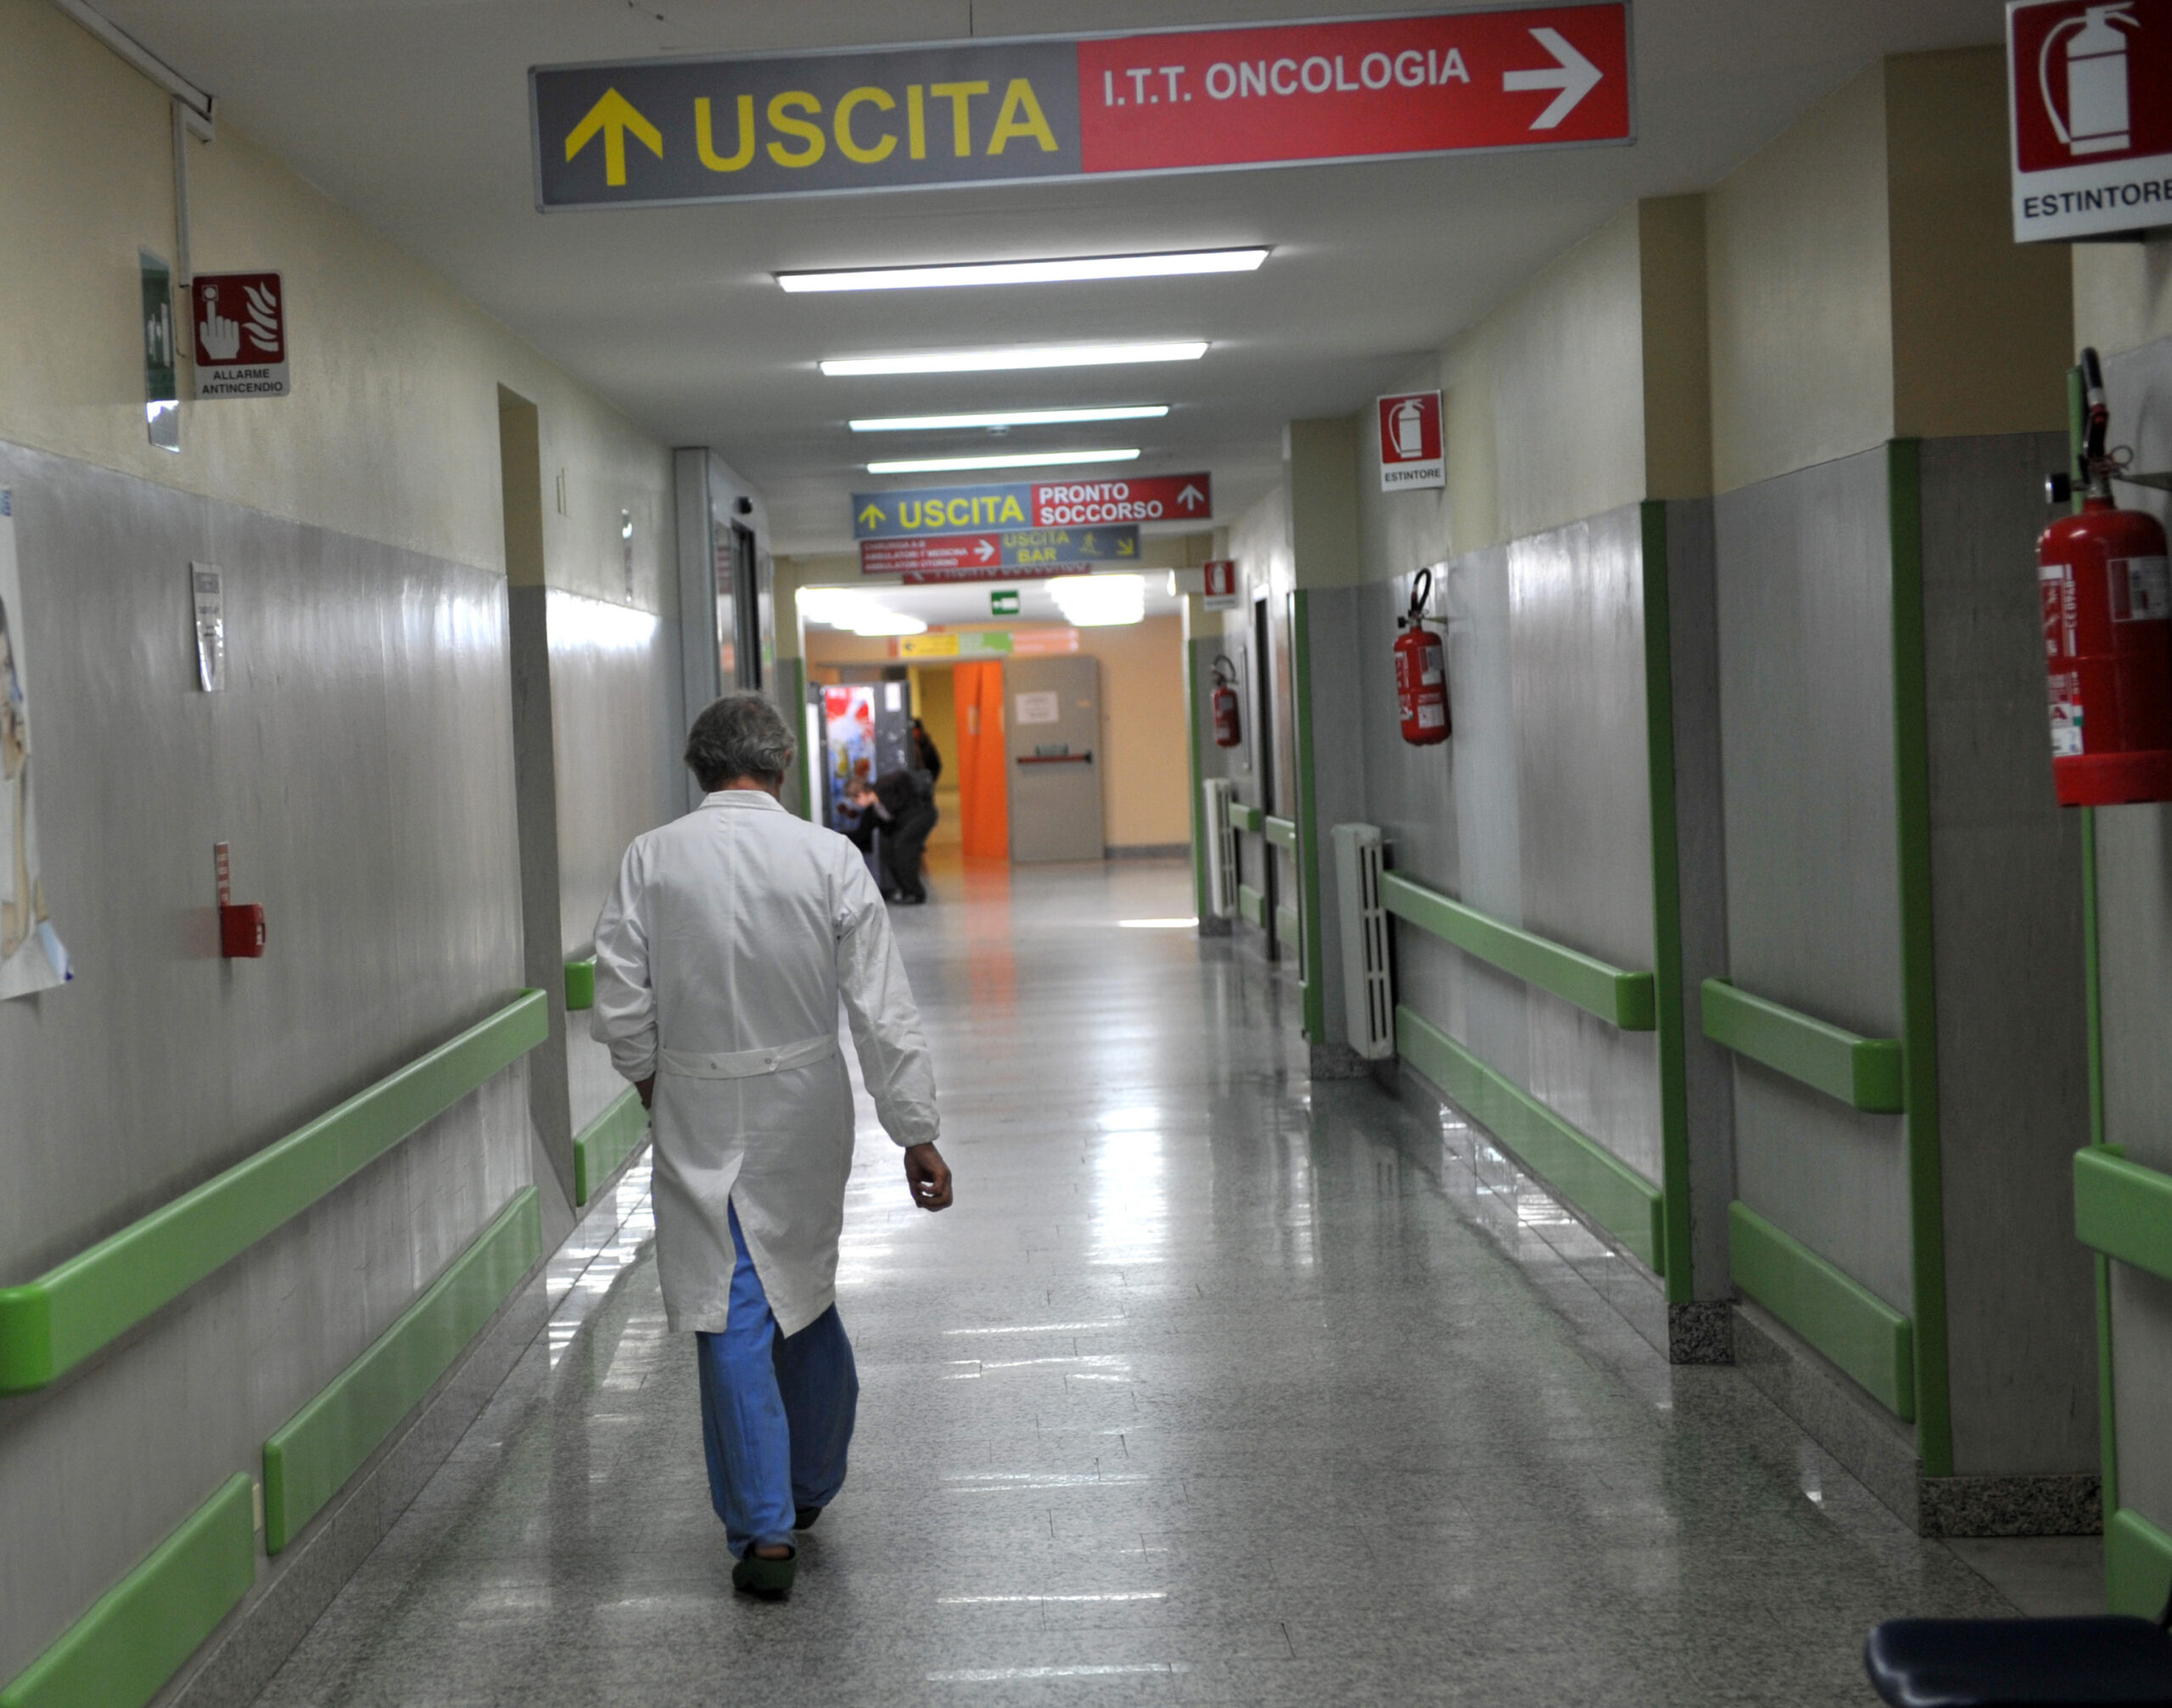 Verso il via libera a medici e infermieri con titolo estero negli ospedali: così il governo prova a ridurre la carenza di personale come in pandemia